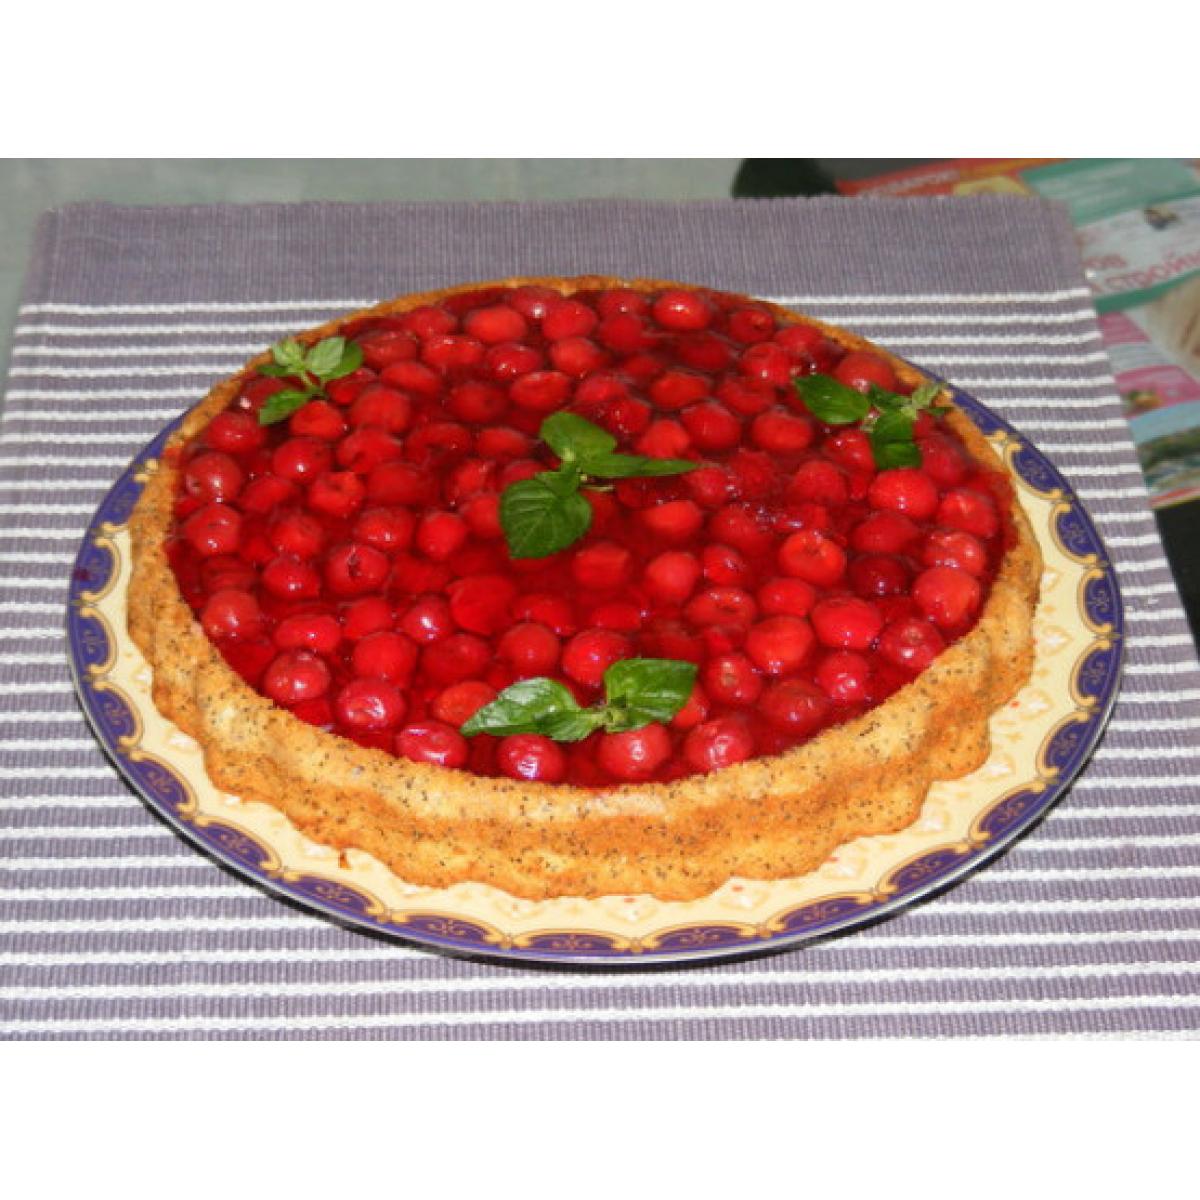 Украшение торта фруктами и ягодами в желе